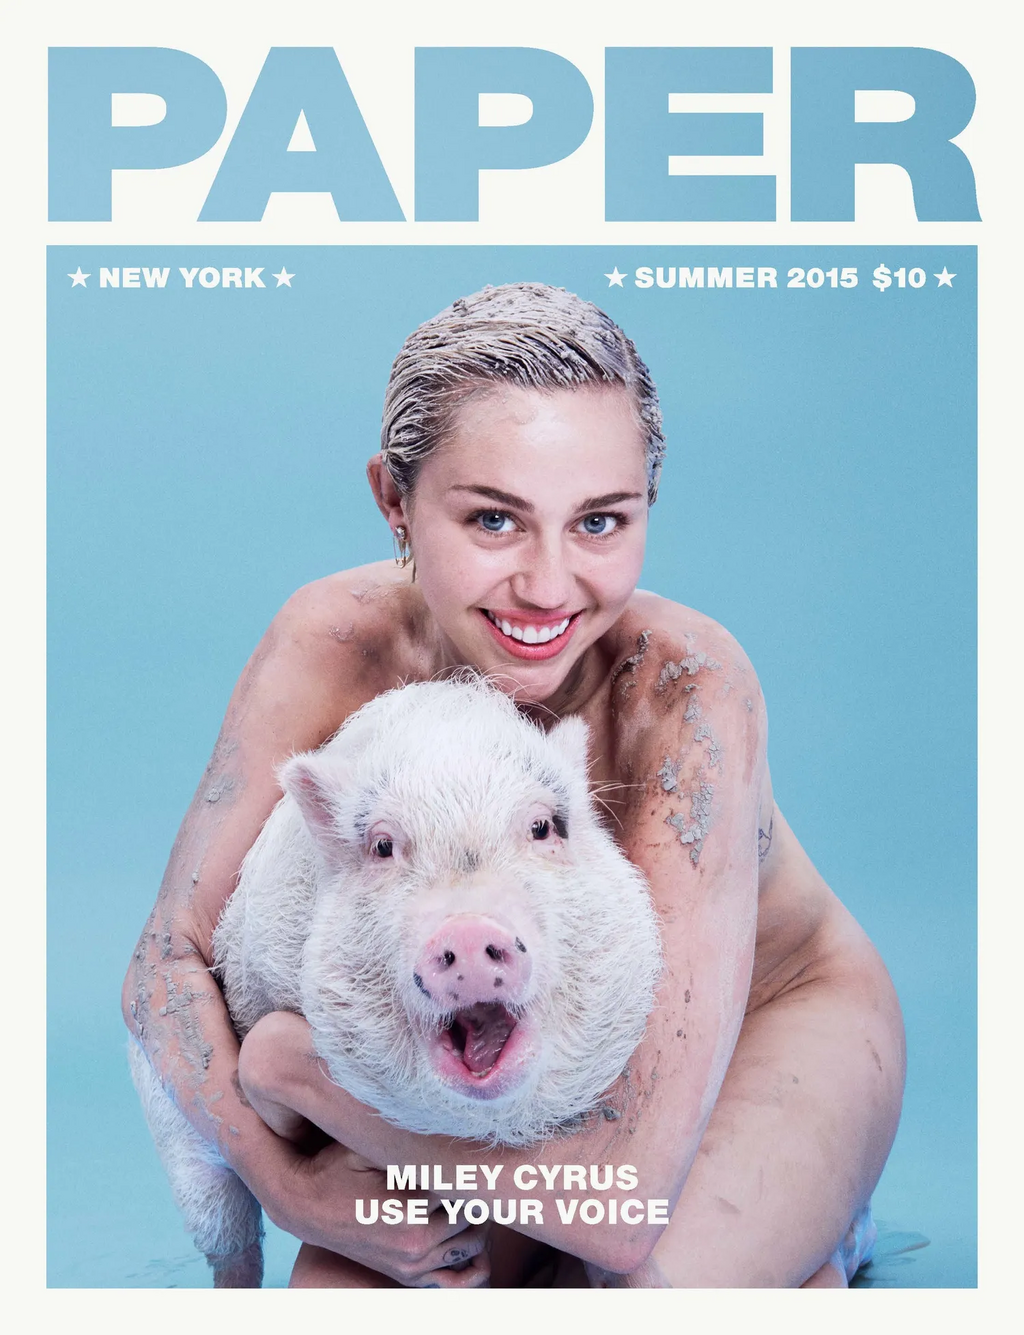 מיילי סיירוס על שער מגזין "פייפר", קיץ 2015